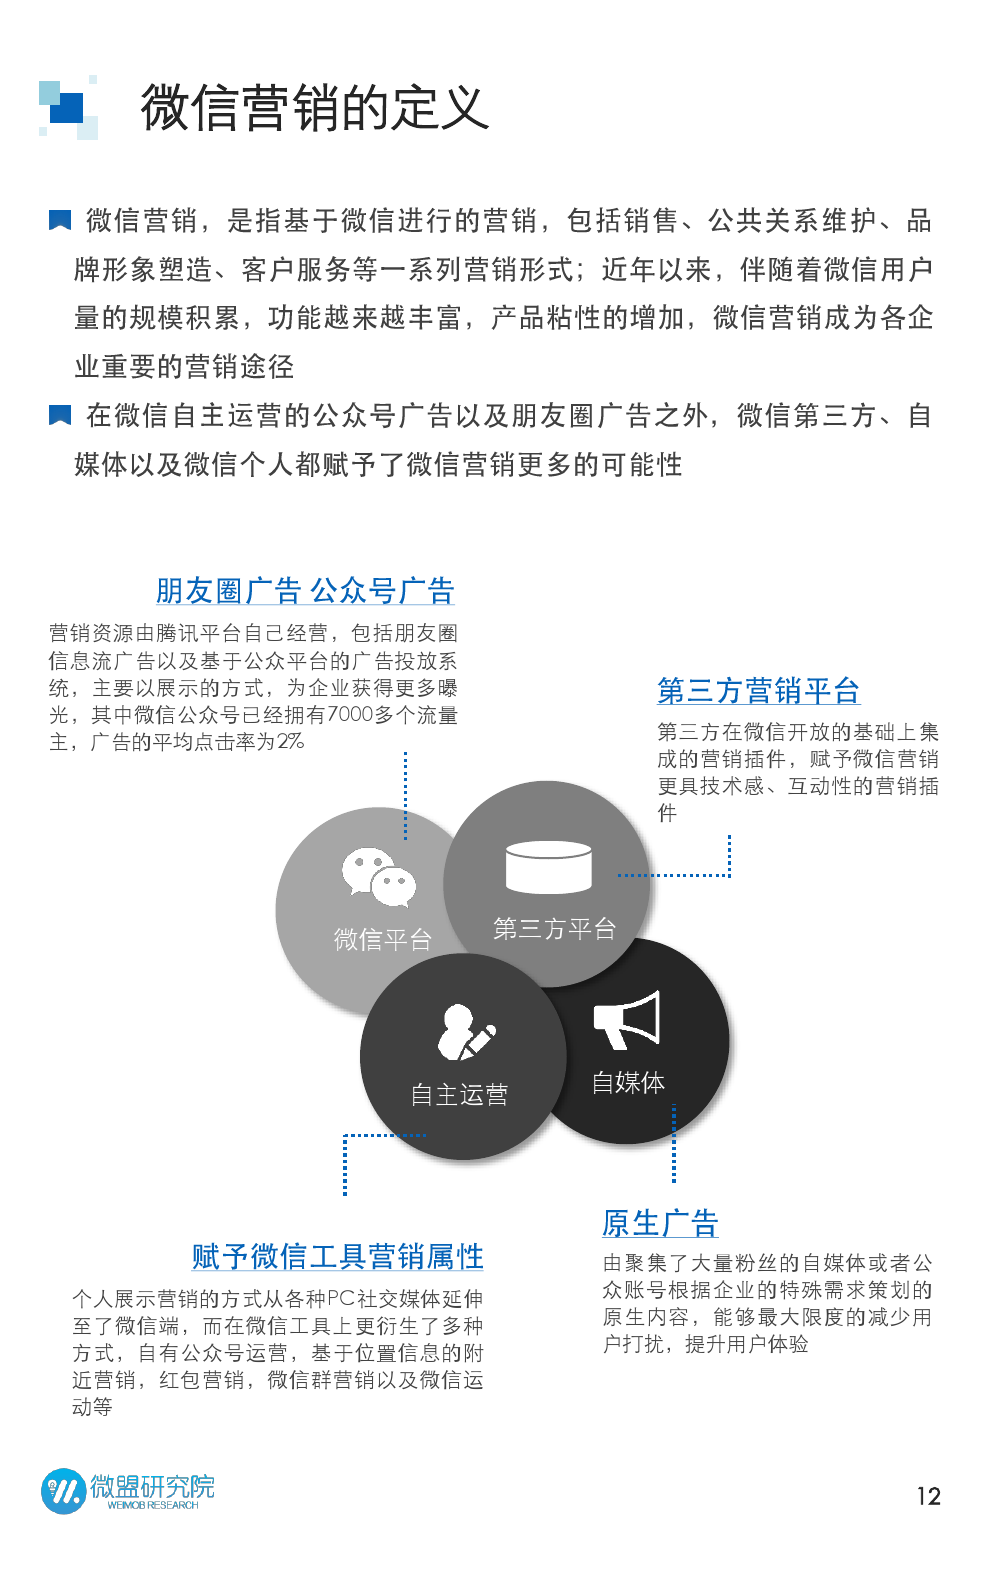 2015年微信营销研究报告_000012